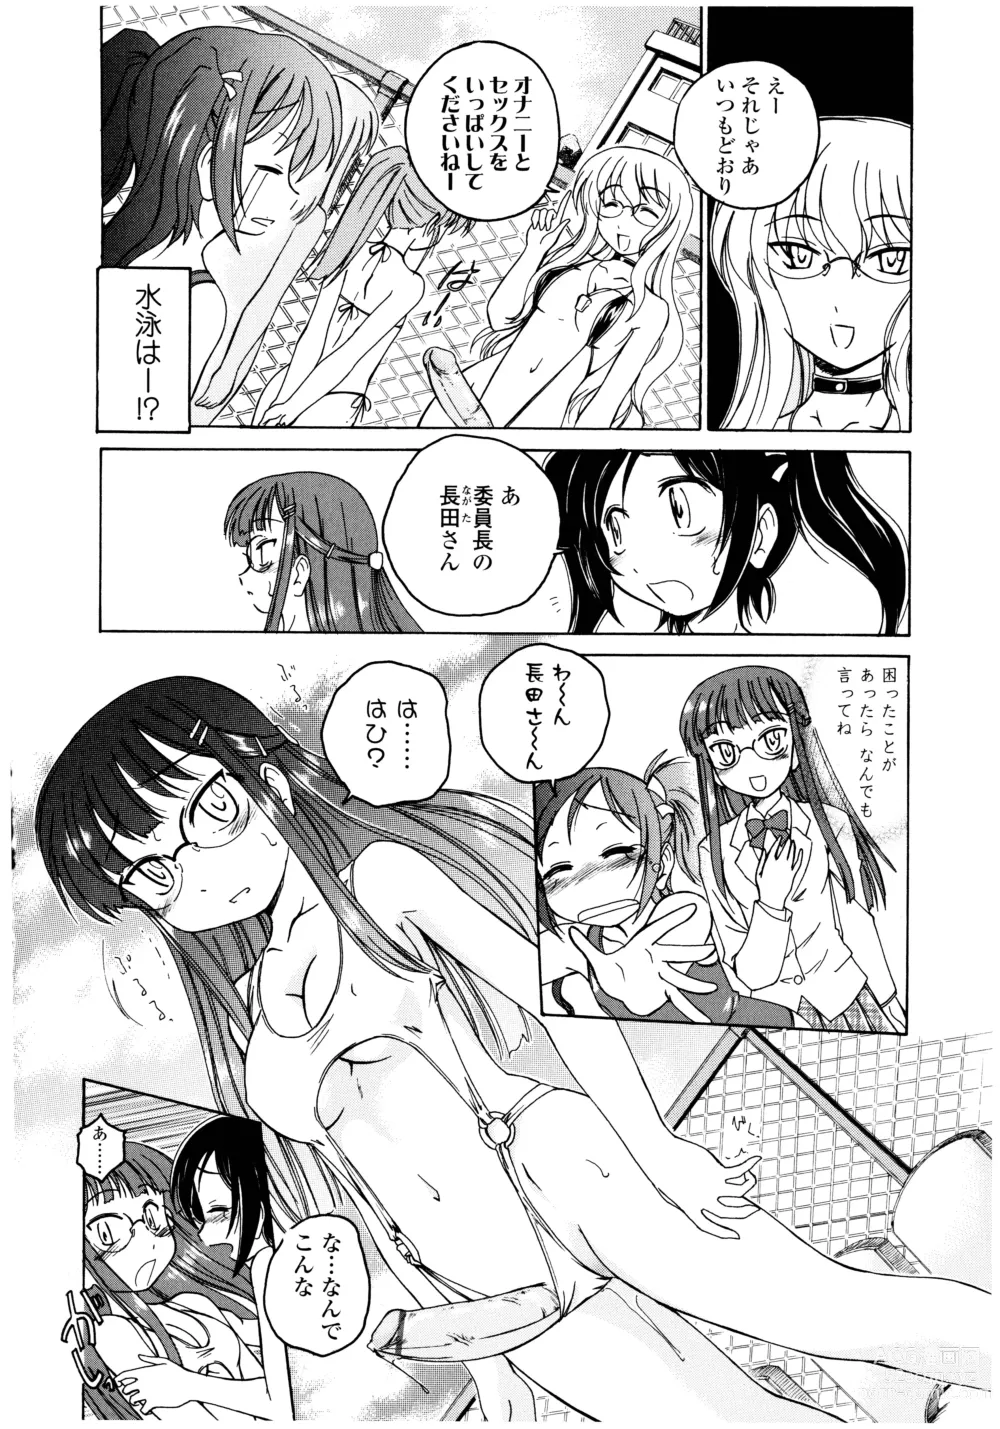 Page 12 of manga Futanari Yesterday